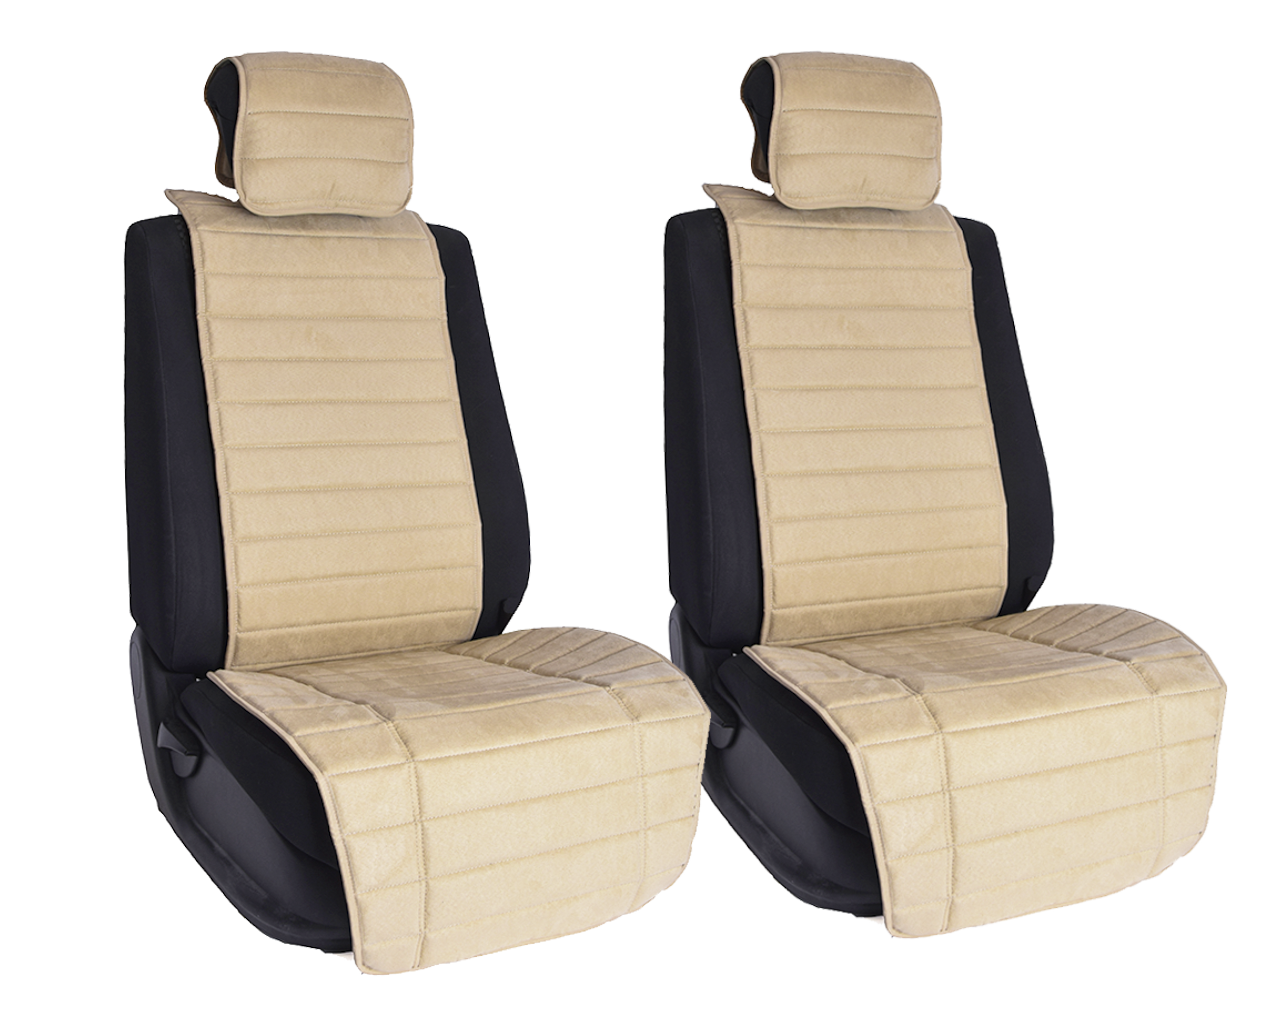 Vital Technologies Комплект накидок на передние сиденья из алькантары (полоса) Beige